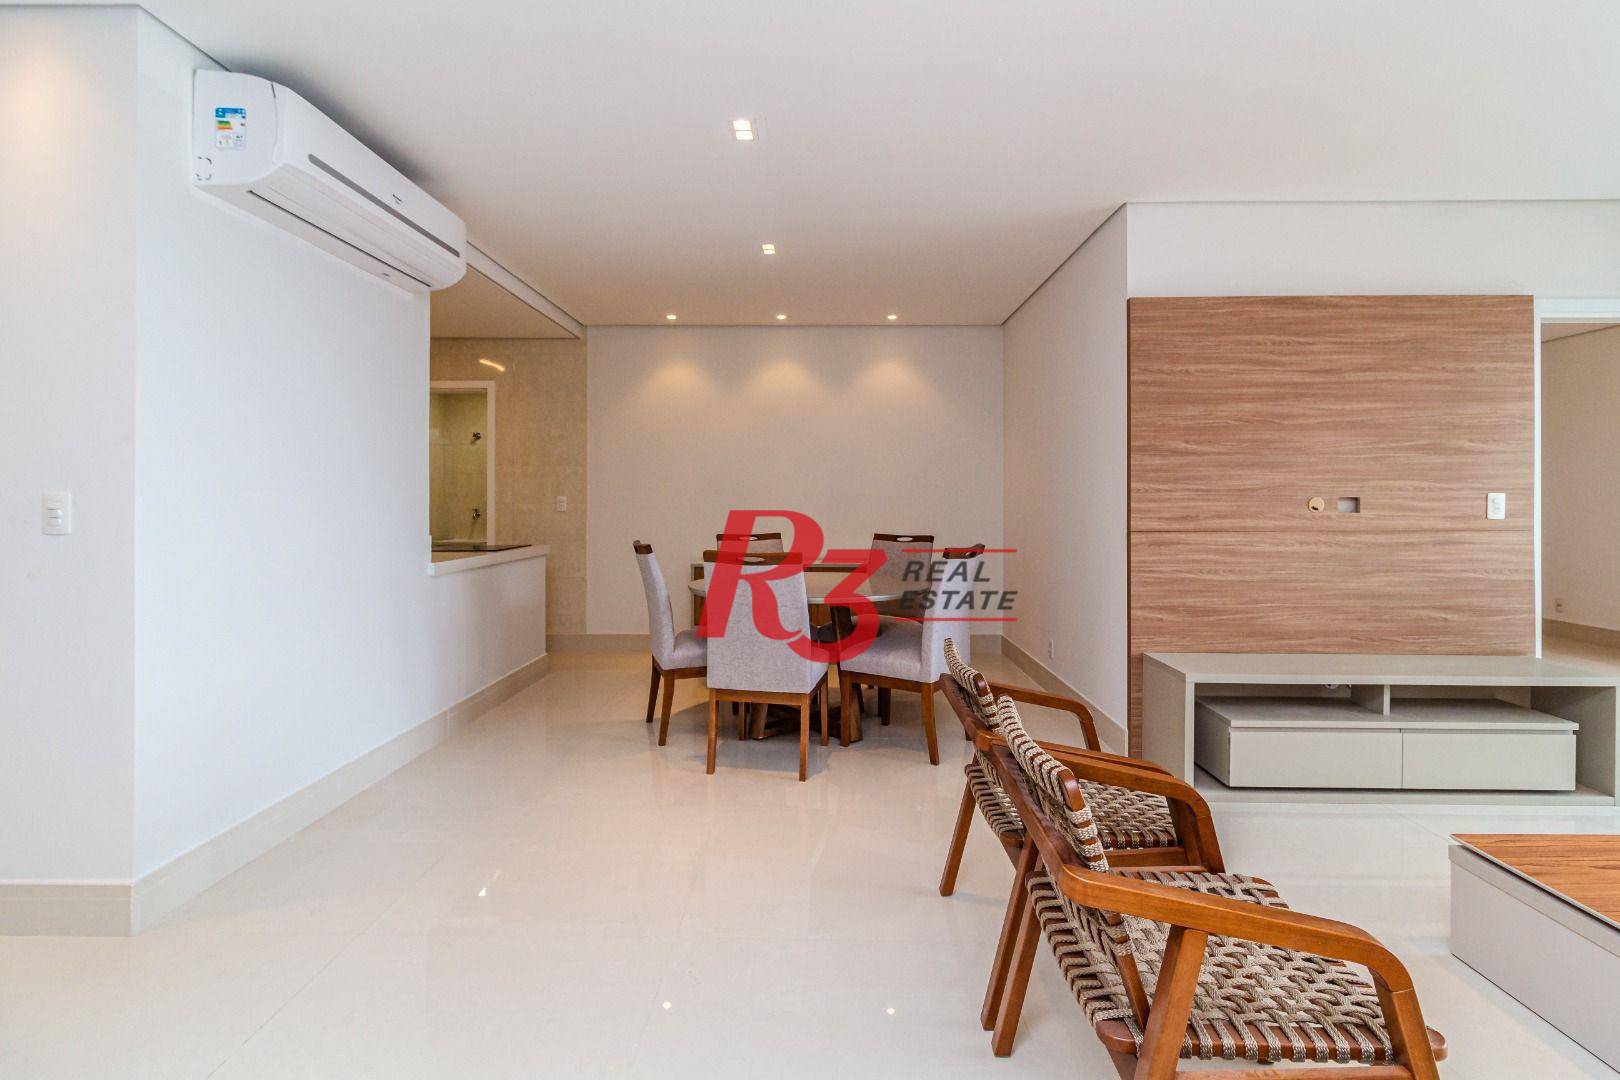 Apartamento com 1 dormitório para alugar, 95 m²  - Aparecida - Santos/SP